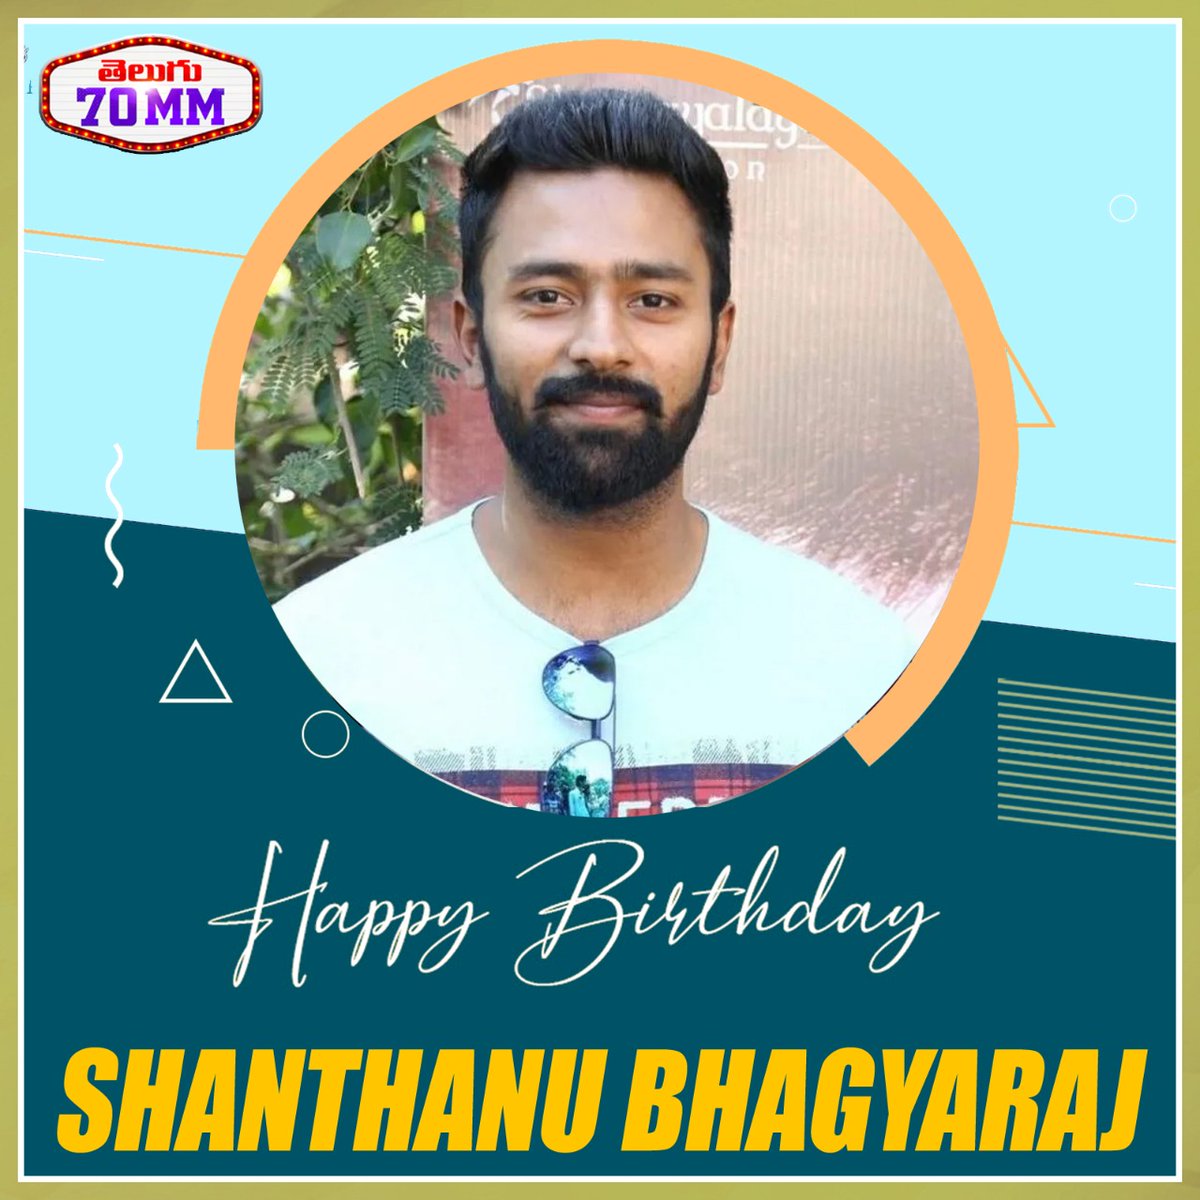 Team @Telugu70mmweb wishing a very Happy Birthday to Actor #ShanthanuBhagyaraj We wish you have a great success ahead  
#HBDShanthanuBhagyaraj #HappyBirthdayShanthanuBhagyaraj #Telugu70mm #Telugu70mmwishes